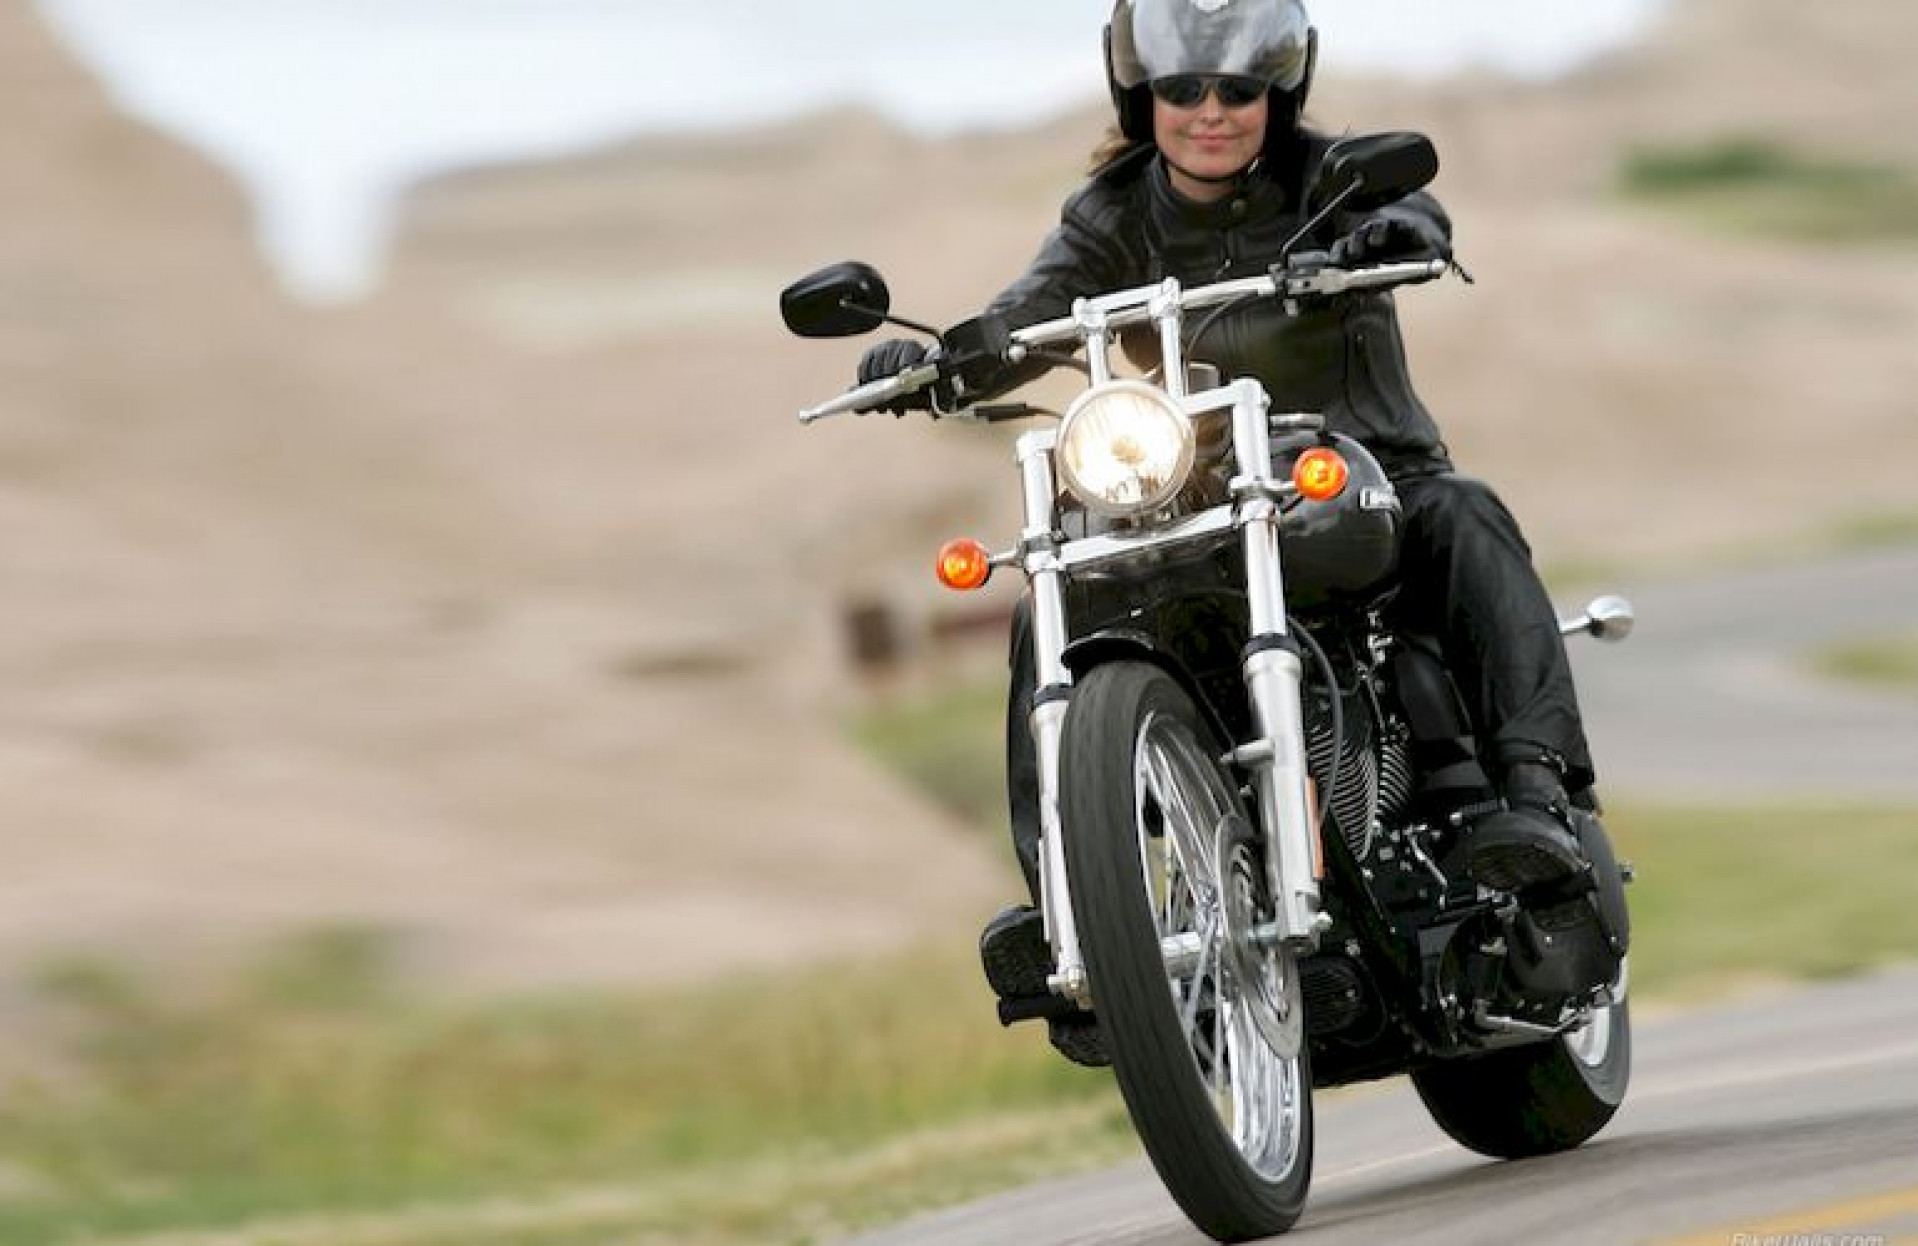 Когда можно ездить на мотоцикле. Harley Davidson 2006 Softail Heritage. Женский Харлей Дэвидсон мотоцикл. Харлей Дэвидсон чоппер езда. Девушка на мотоцикле.